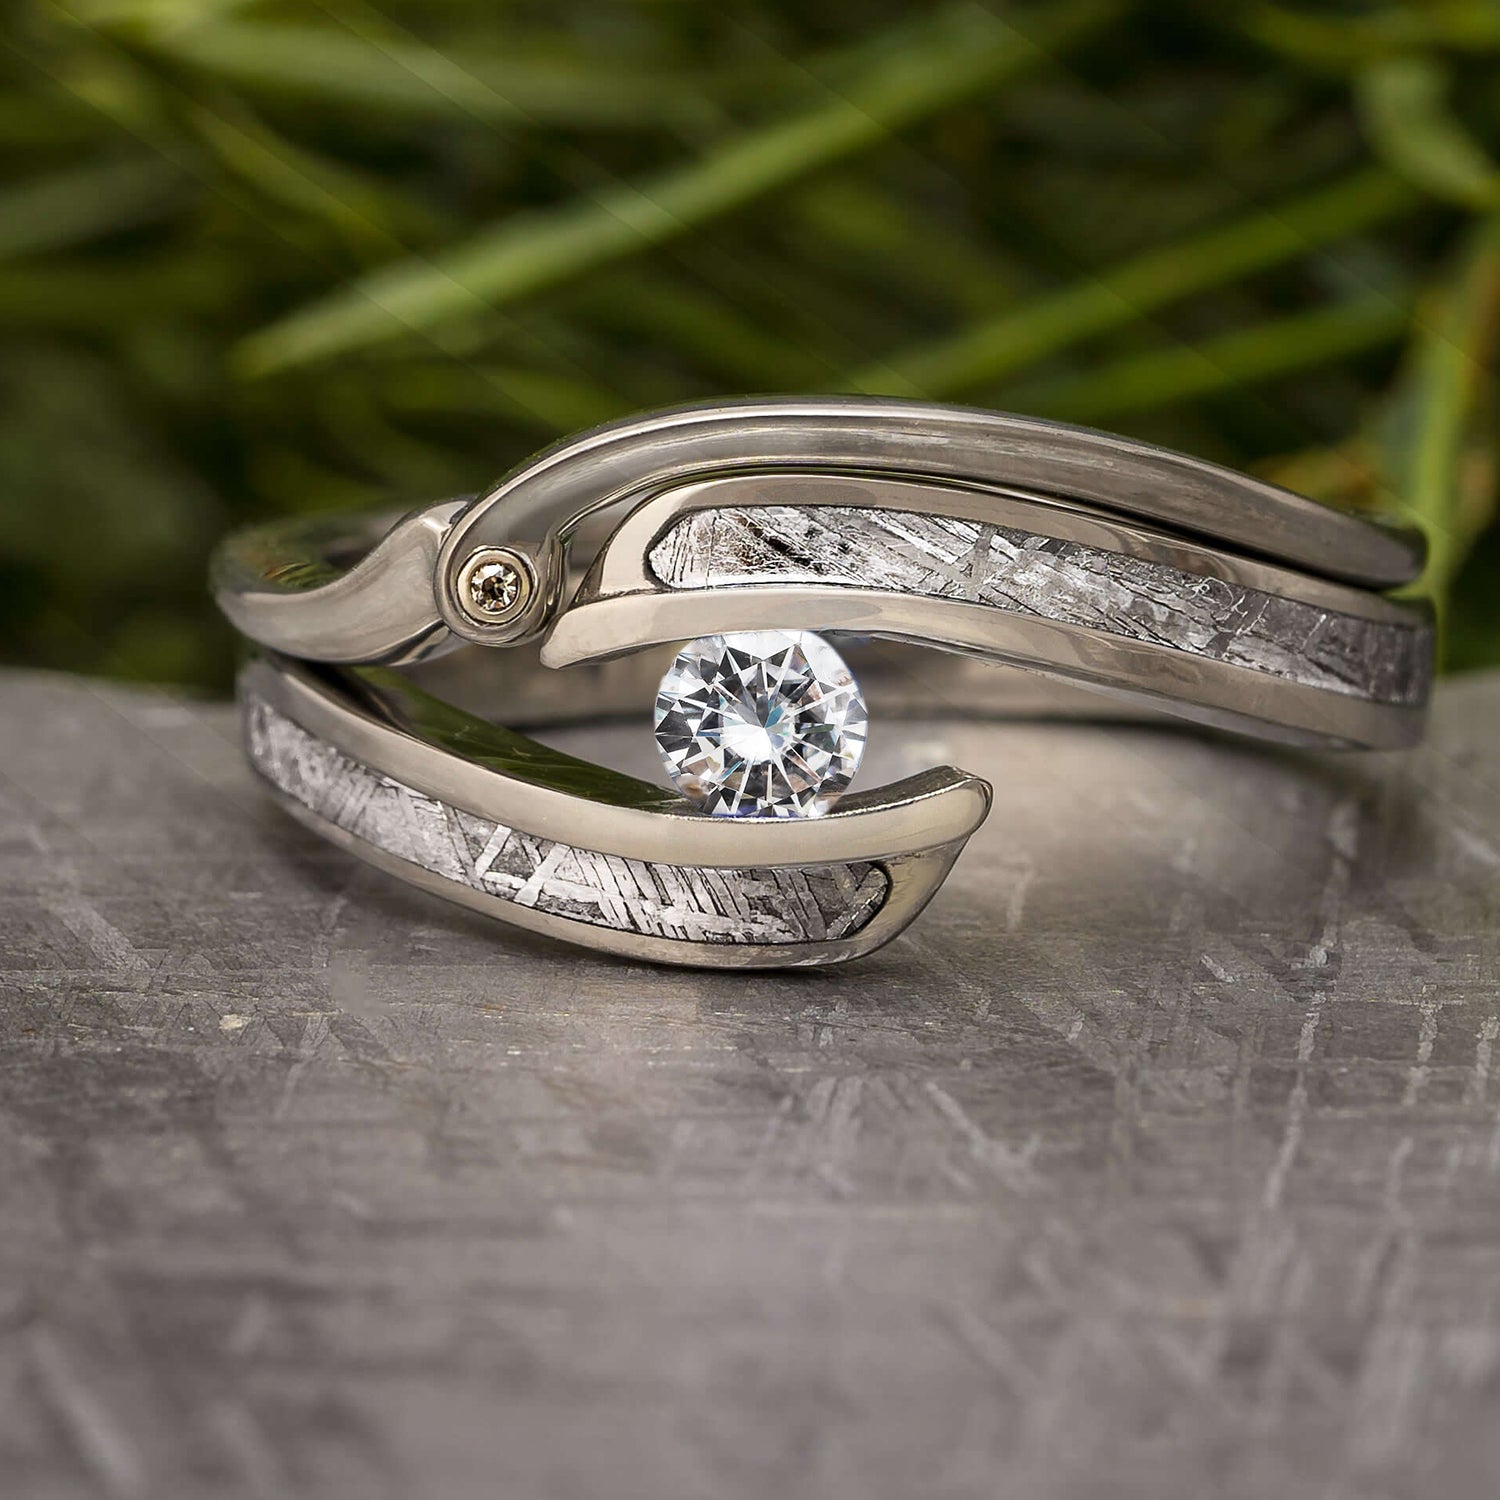 Heiheiup Alloy Inlaid Rhinestone Female Ring Popular Exquisite